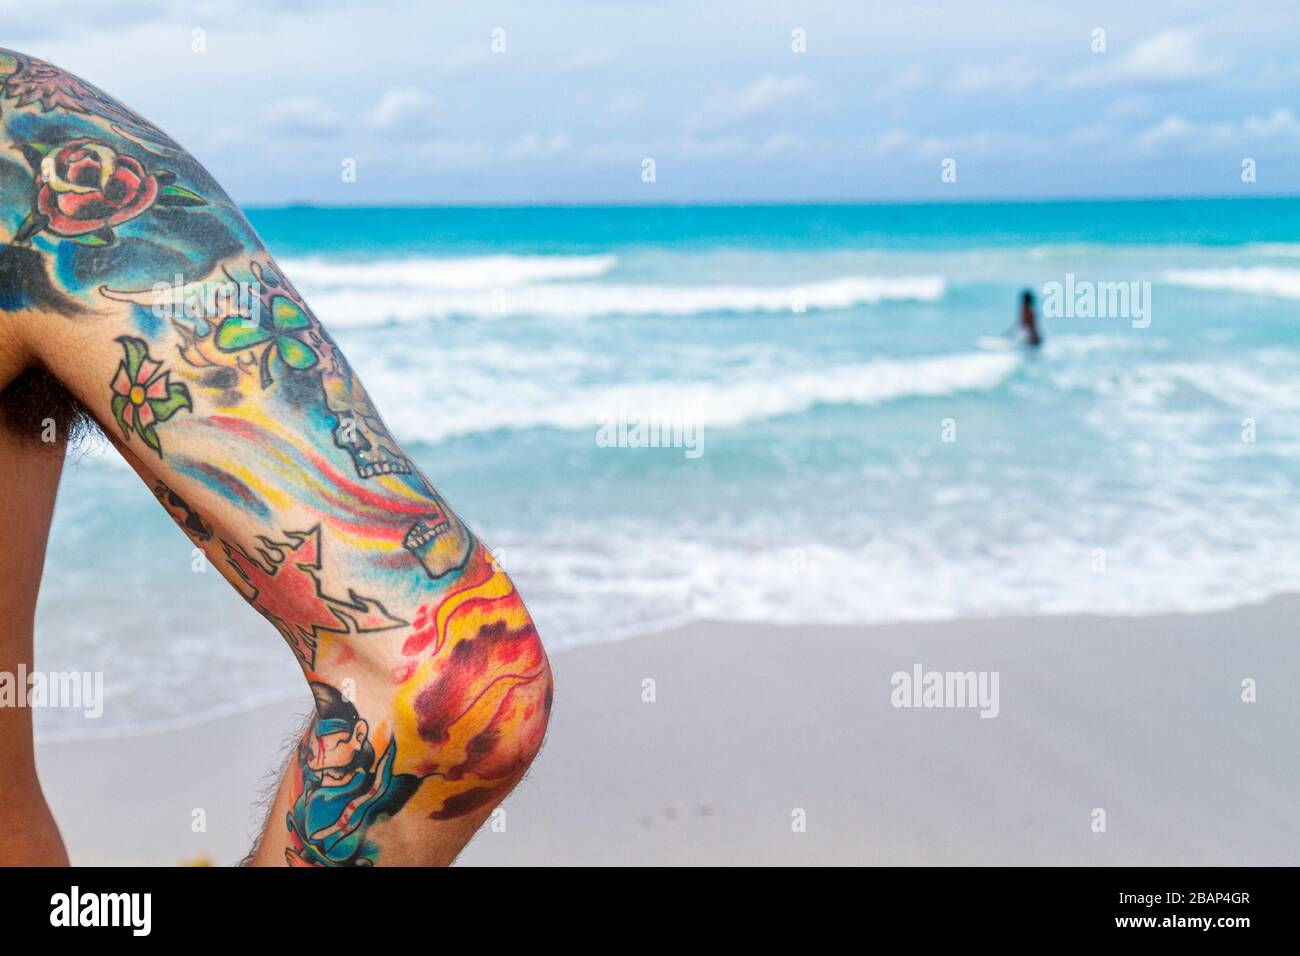 Miami Beach Florida, Atlantik, Wasser, Ufer, Surfen, Mann Männer Erwachsene Erwachsene, Arm, Tätowierung, Tattoos, bunt, Wellen, Wasser, FL110611012 Stockfoto